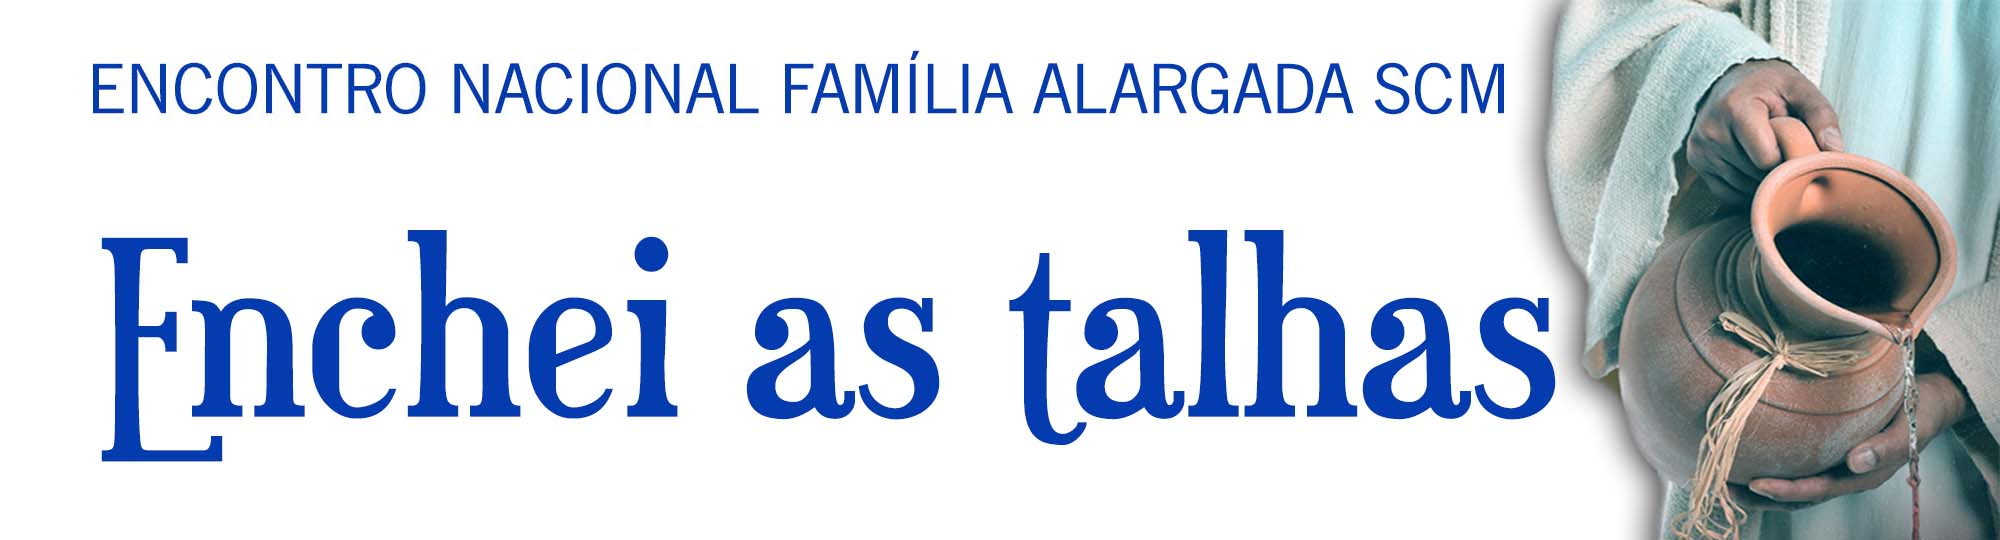 Família Alargada reúne-se em Fátima
